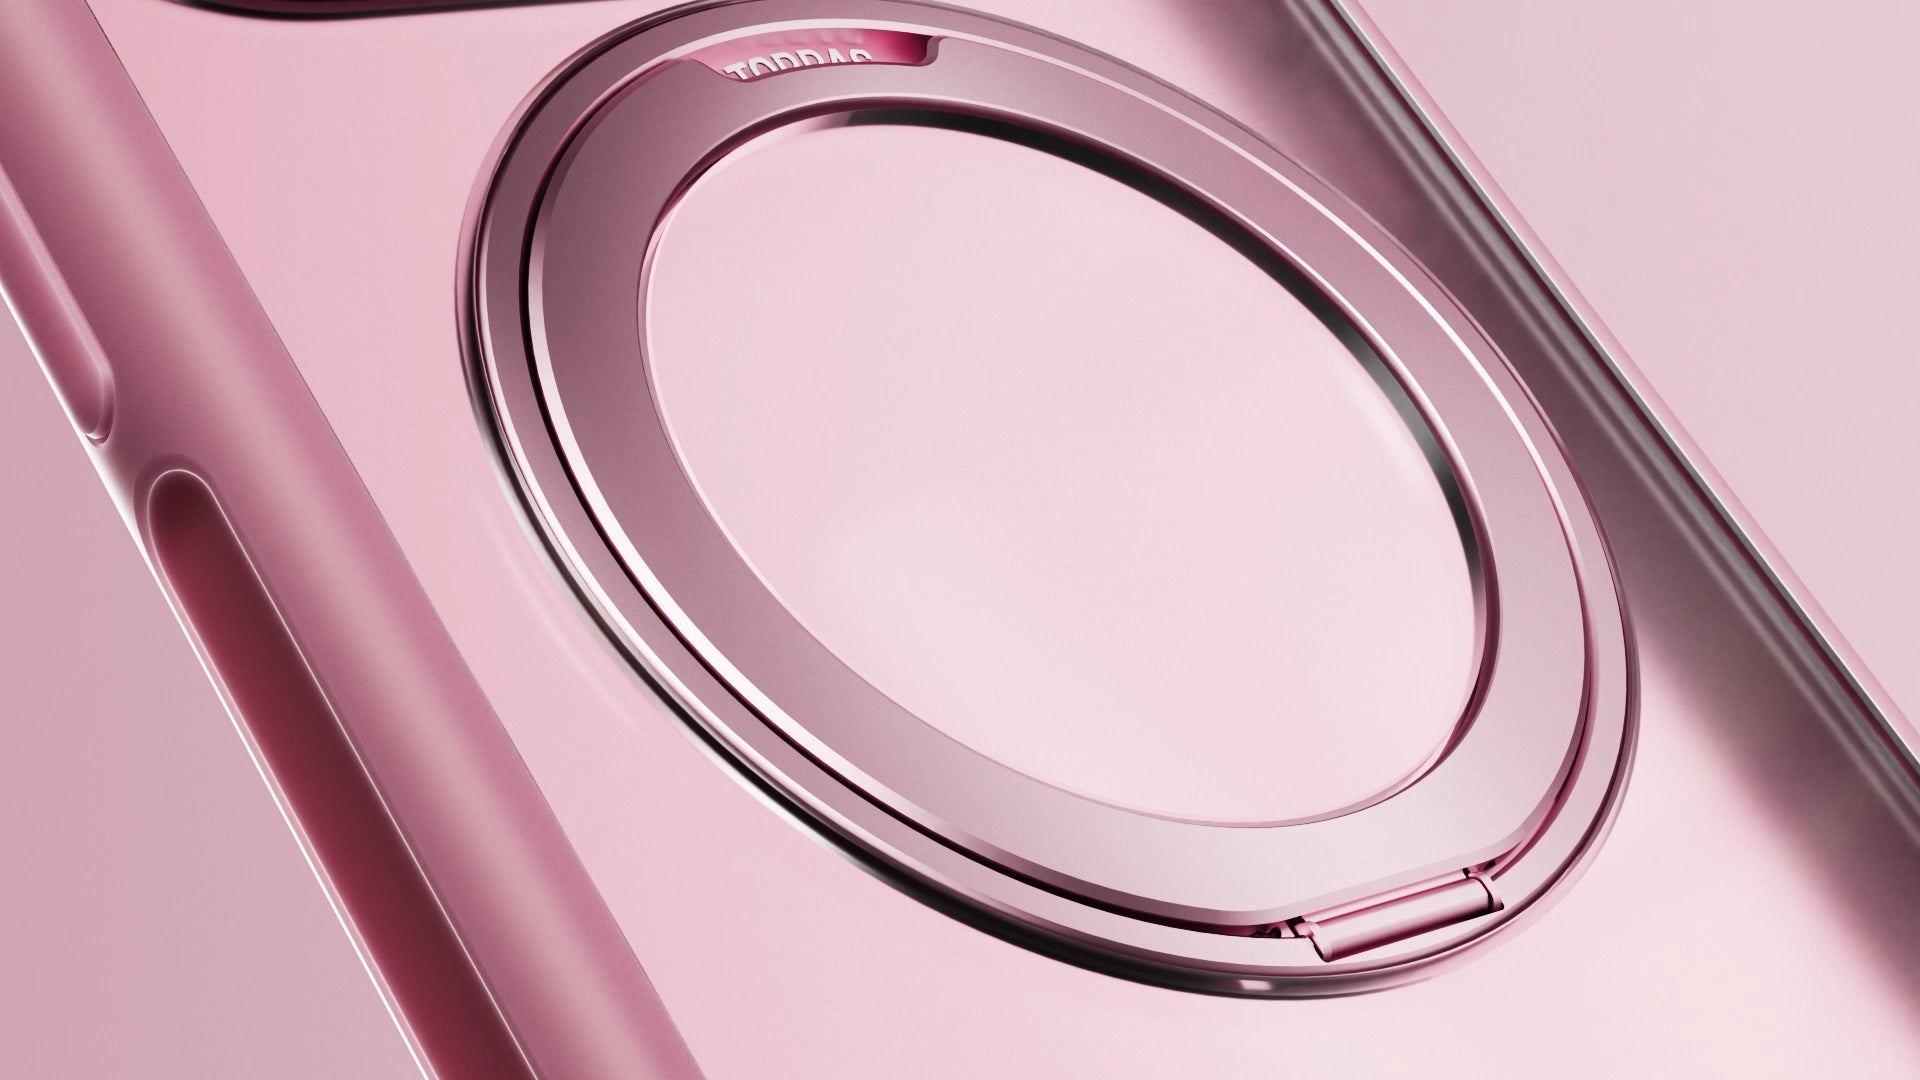 【予約販売】本日春限定色・桜ピンクUPRO Ostand R FusionがTORRAS公式サイトで10%割引予約販売開始！